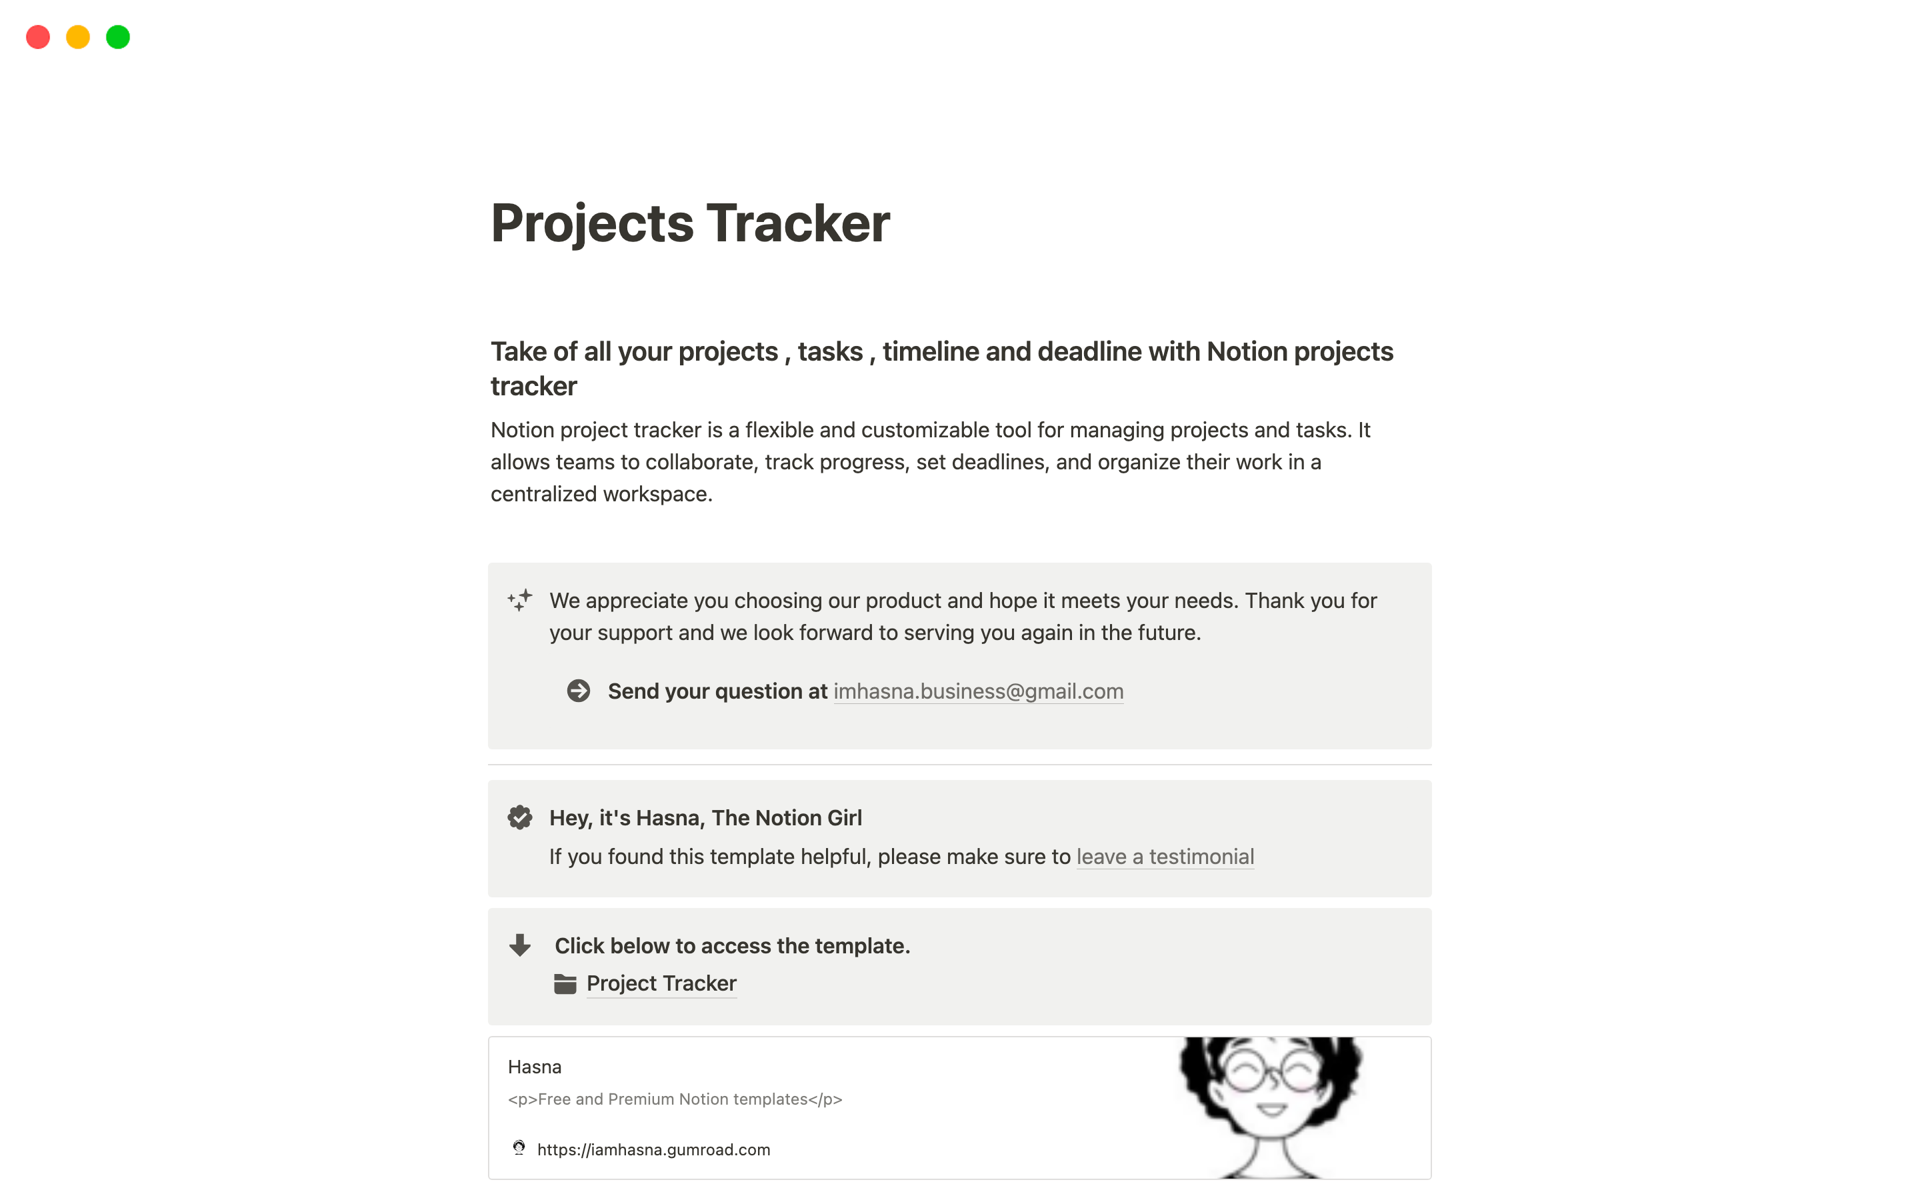 Uma prévia do modelo para Projects Tracker